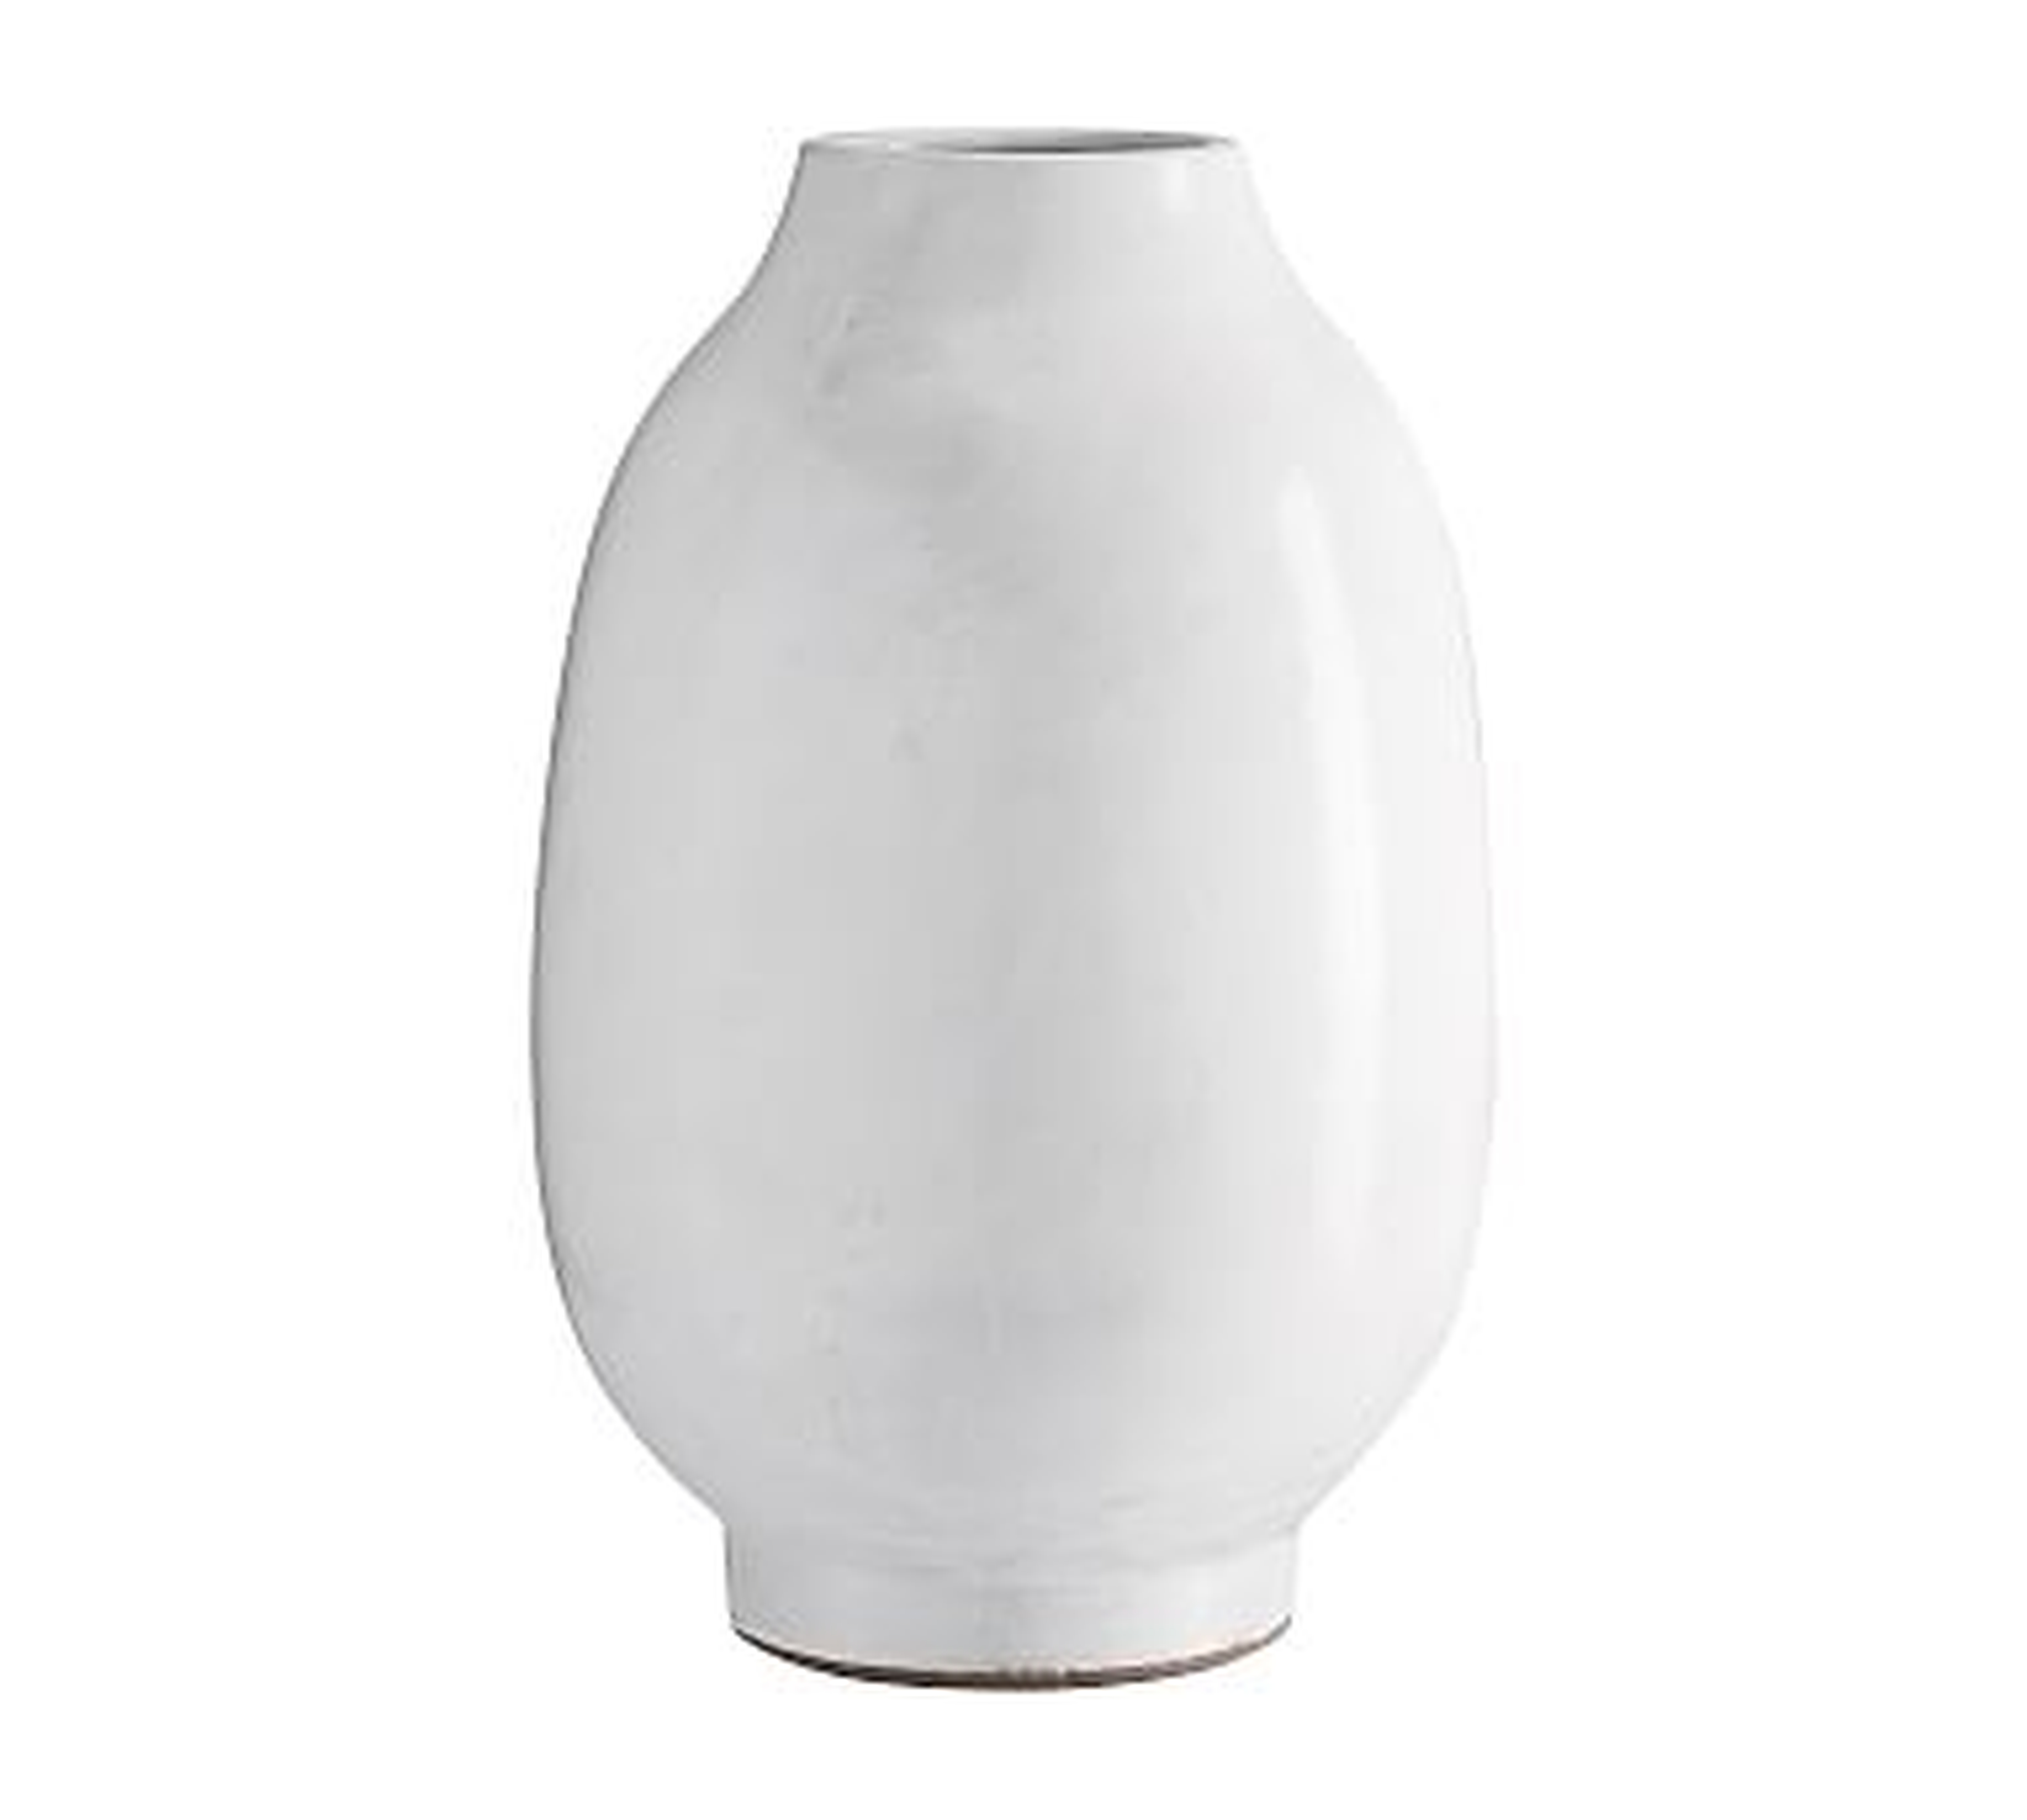 Quinn Ceramic Vase, White, Tall - Pottery Barn